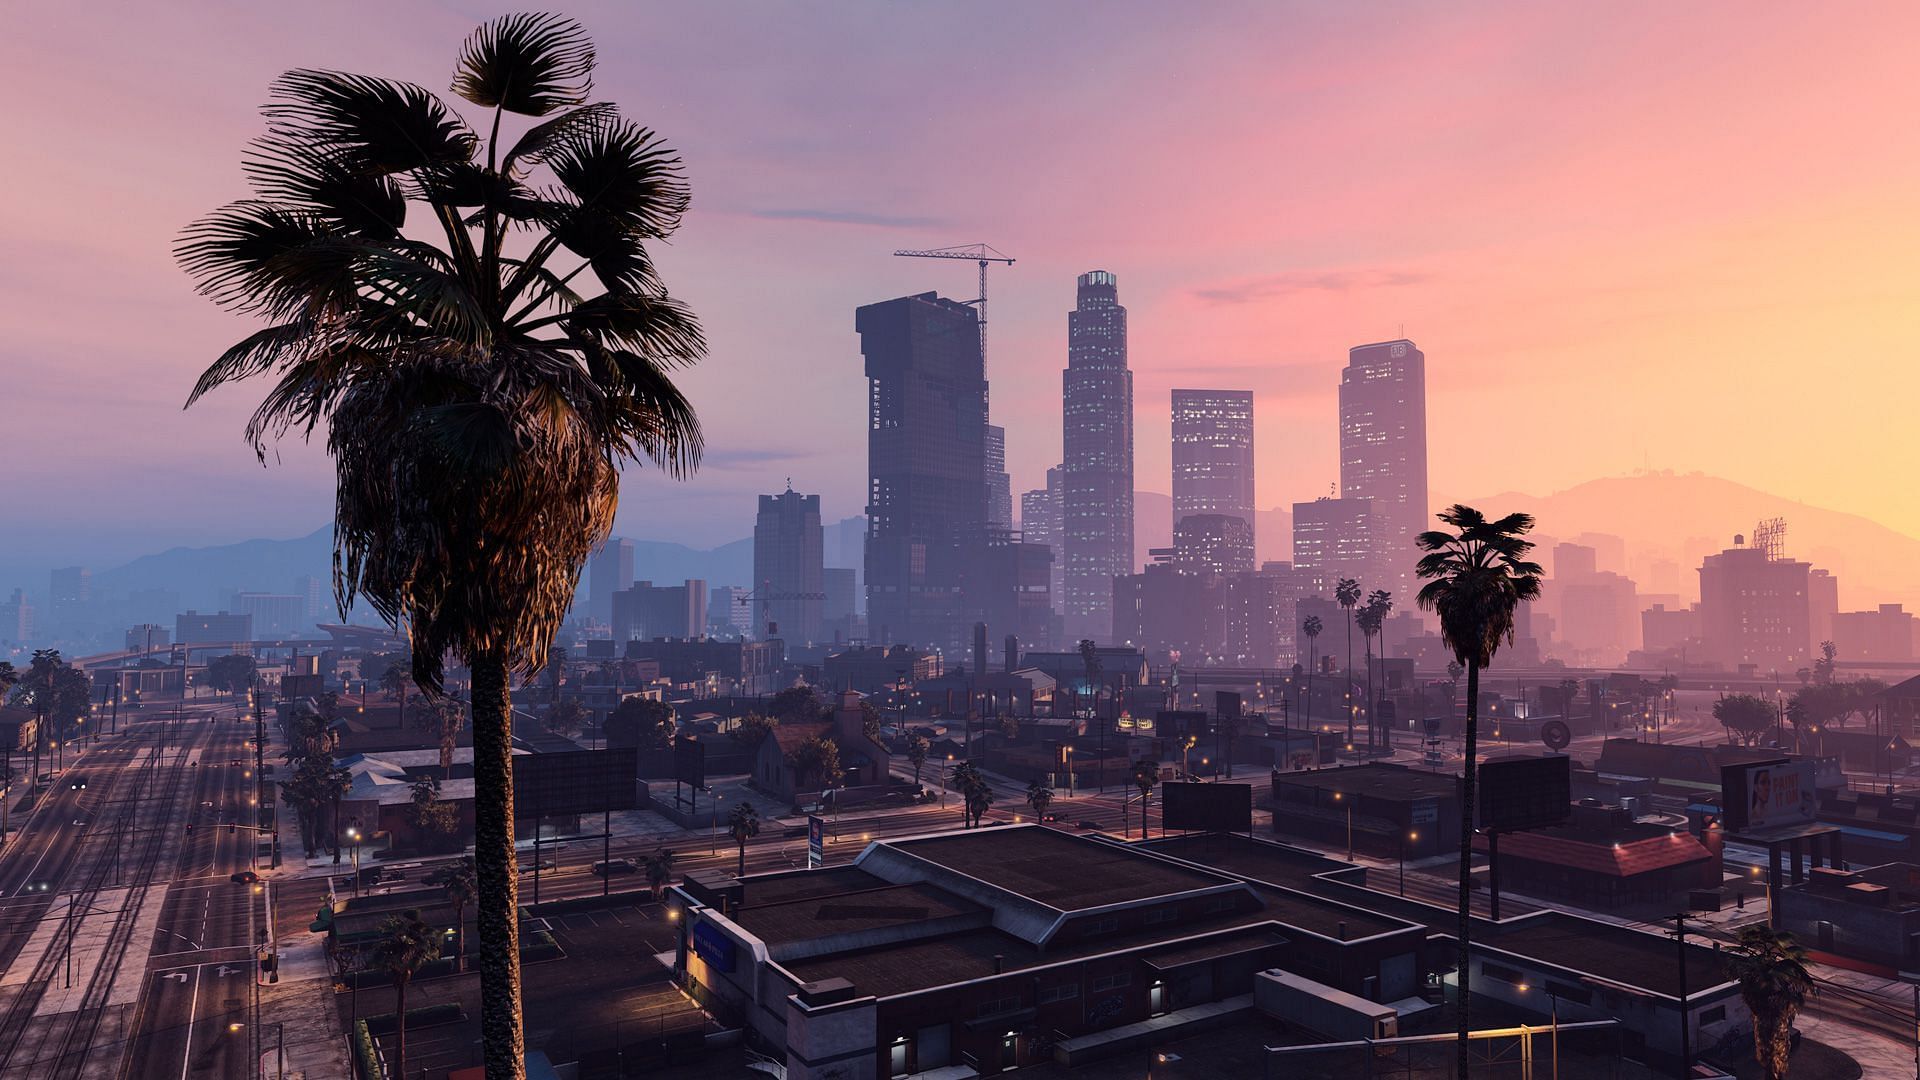 Los Santos as seen in GTA 5 (image via Rockstar Games)